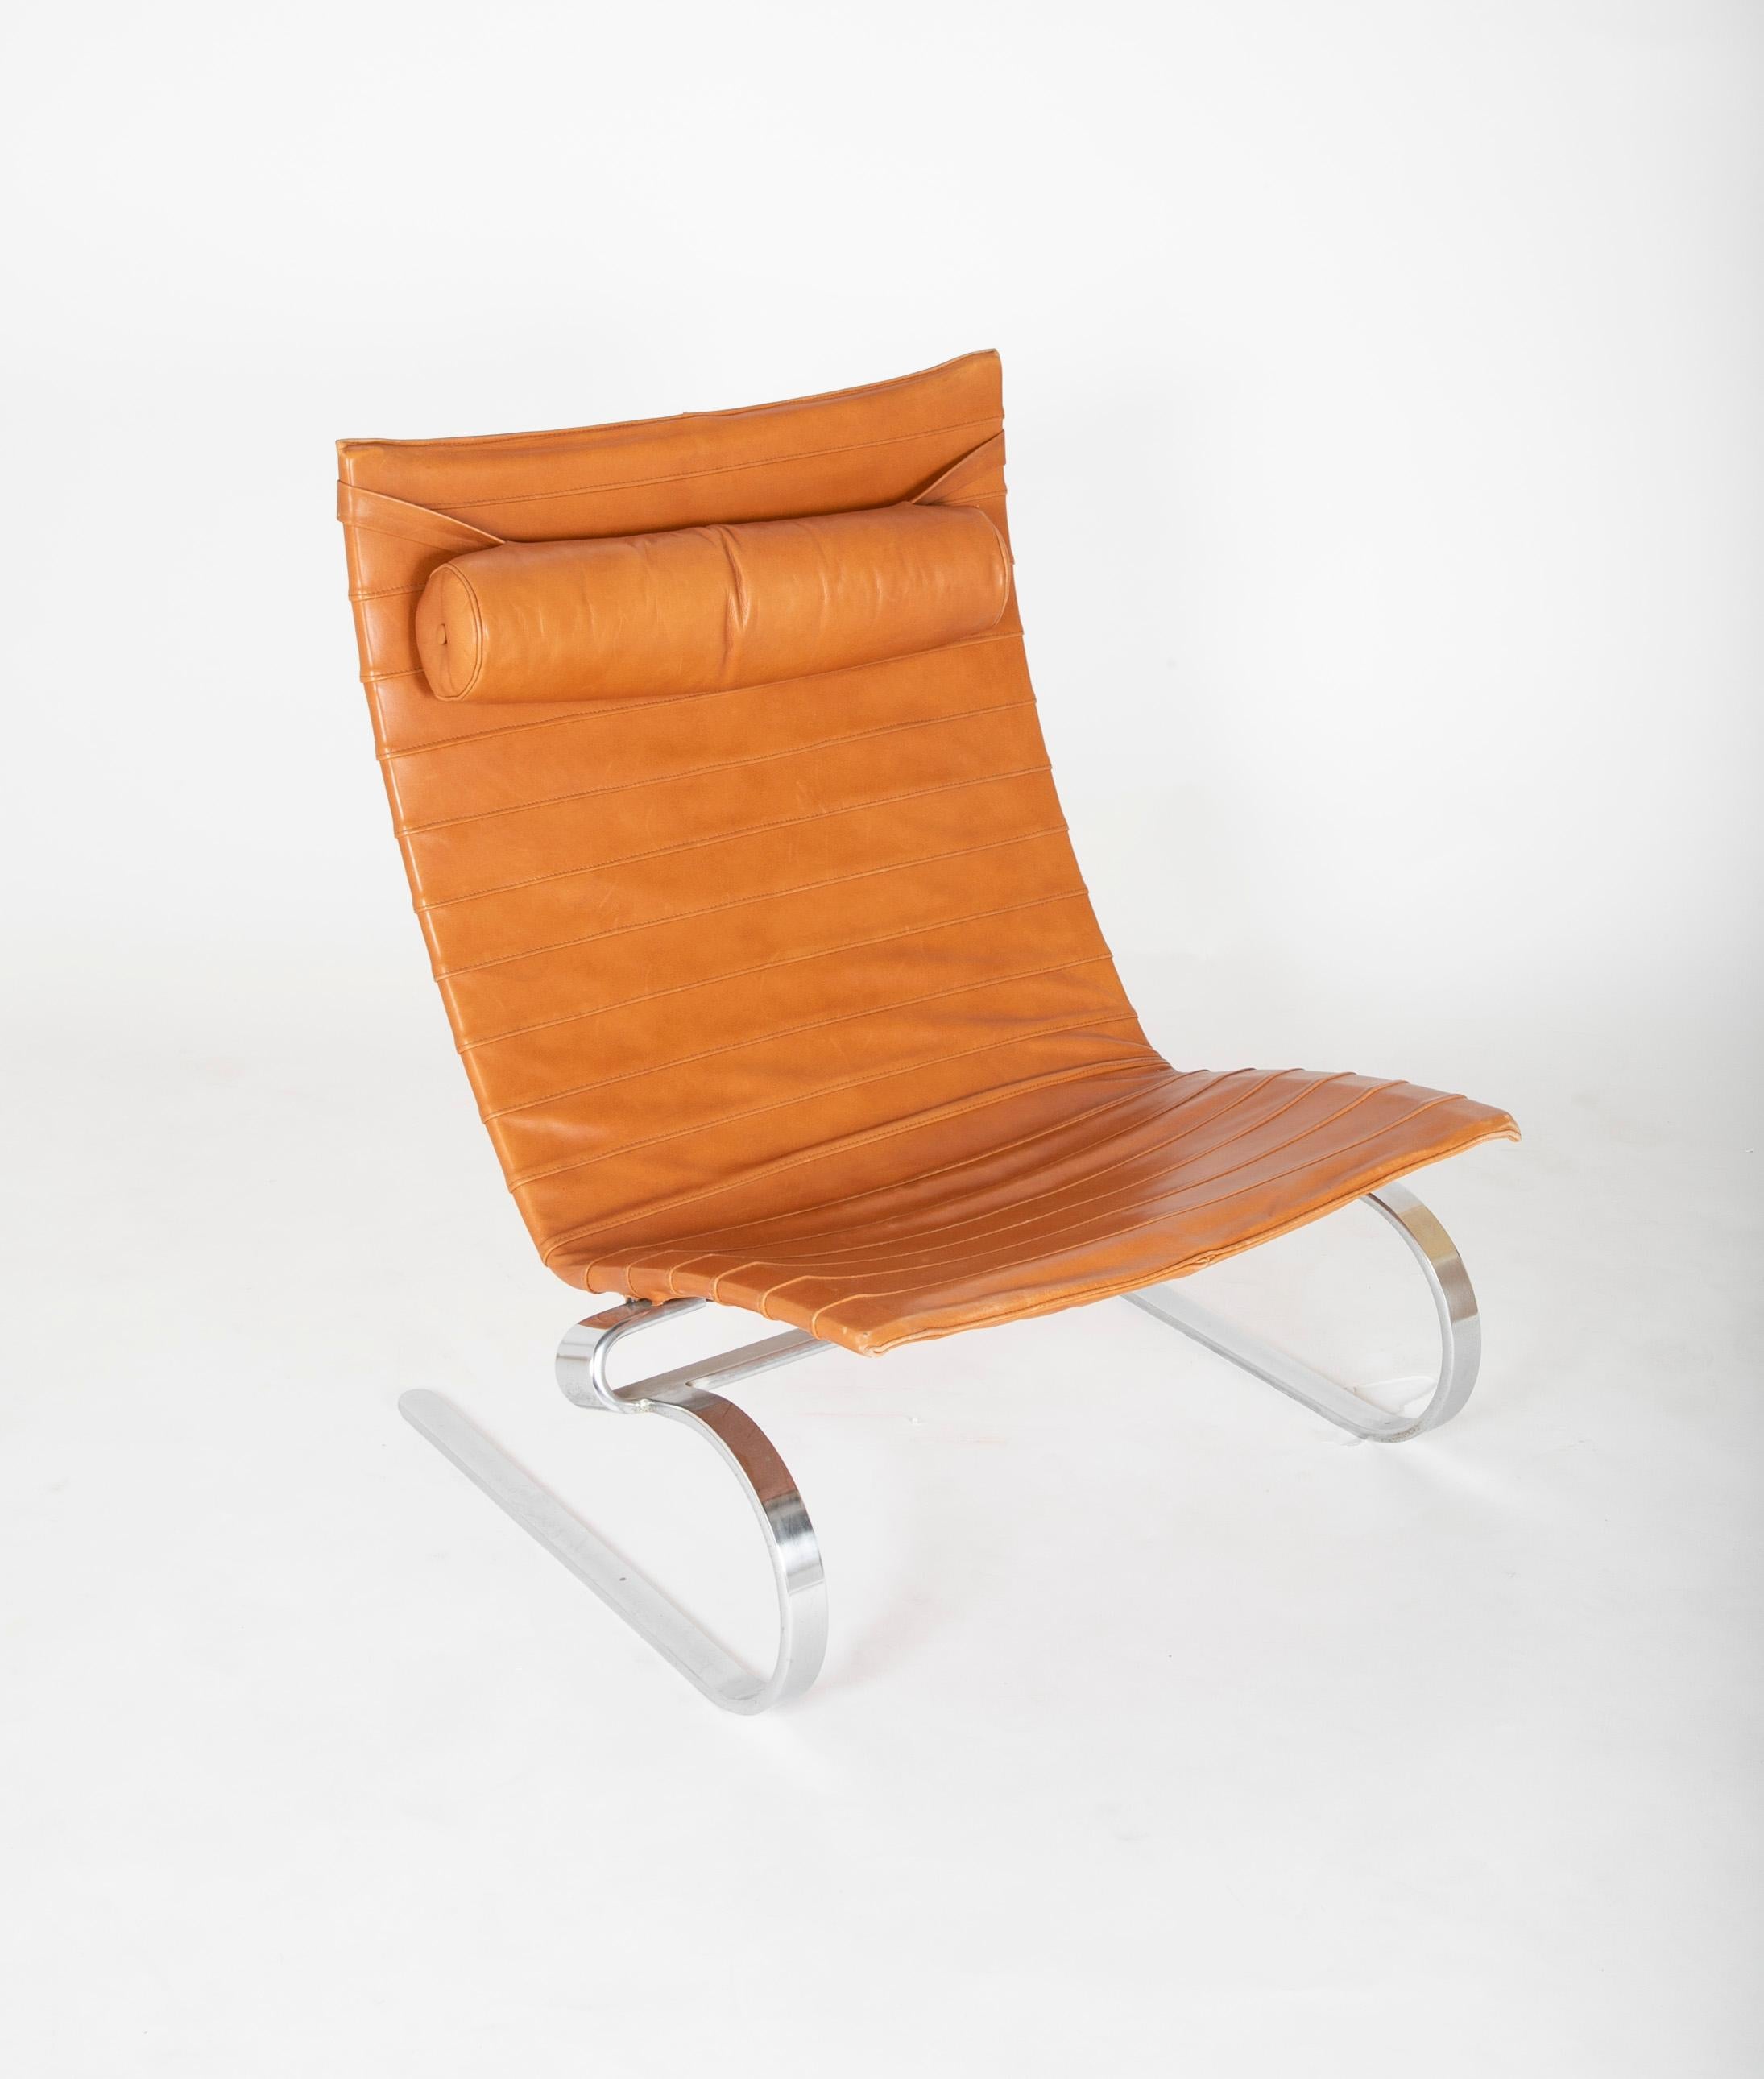 Ein von Kold Christensen hergestellter PK20-Stuhl in Poul Kjaeholms ikonischem Mattchrom-Finish. Das Leder ist in gutem Zustand, ohne Flecken und bleibt geschmeidig. E. Kold Christensen-Marke auf der Unterseite.